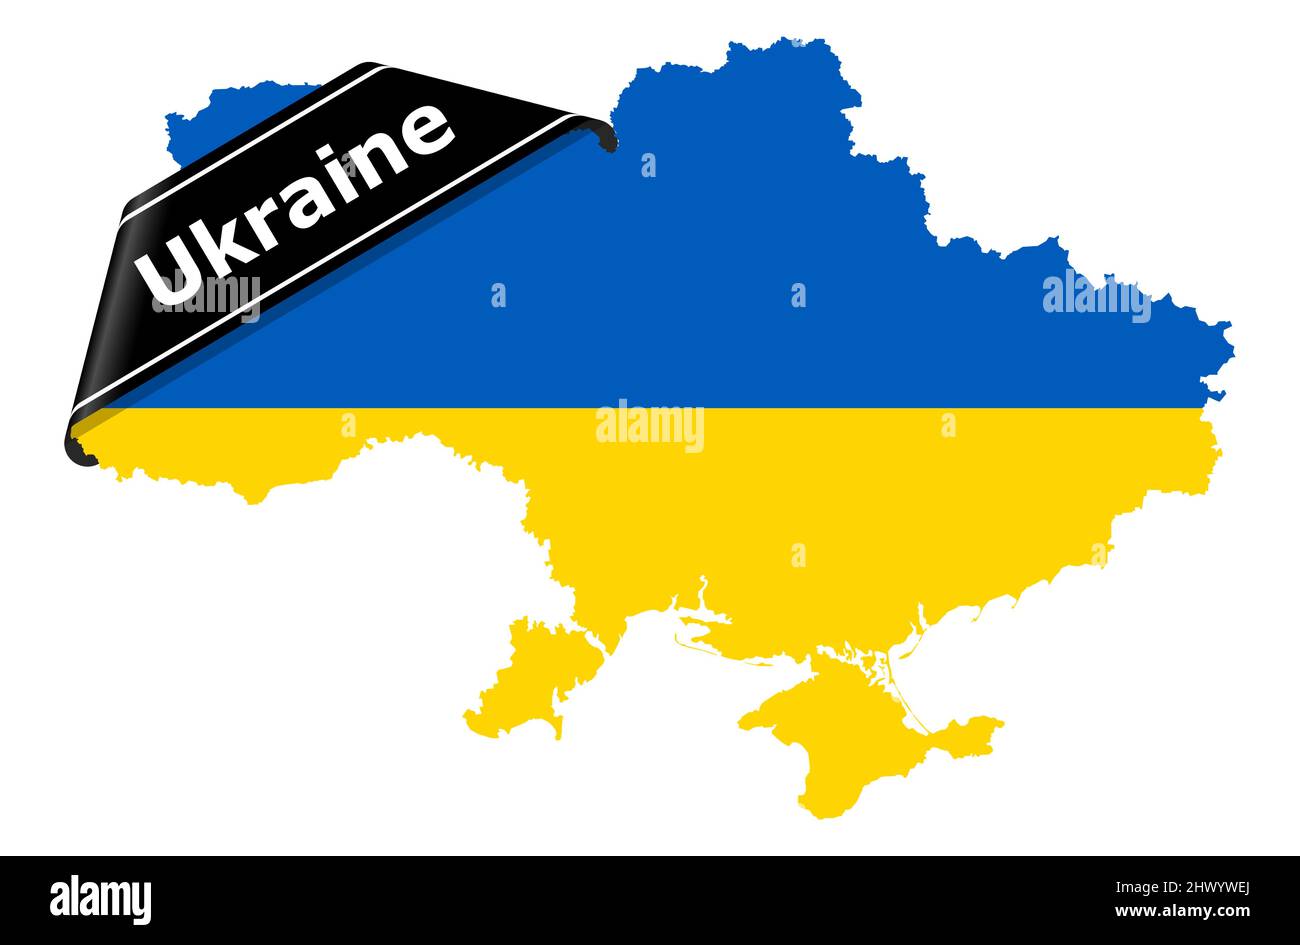 eps-Vektor-Illustration mit Silhouette des Landes ukraine mit Länderfarben und schwarzem Trauerbanner für den Krieg 2022 Stock Vektor